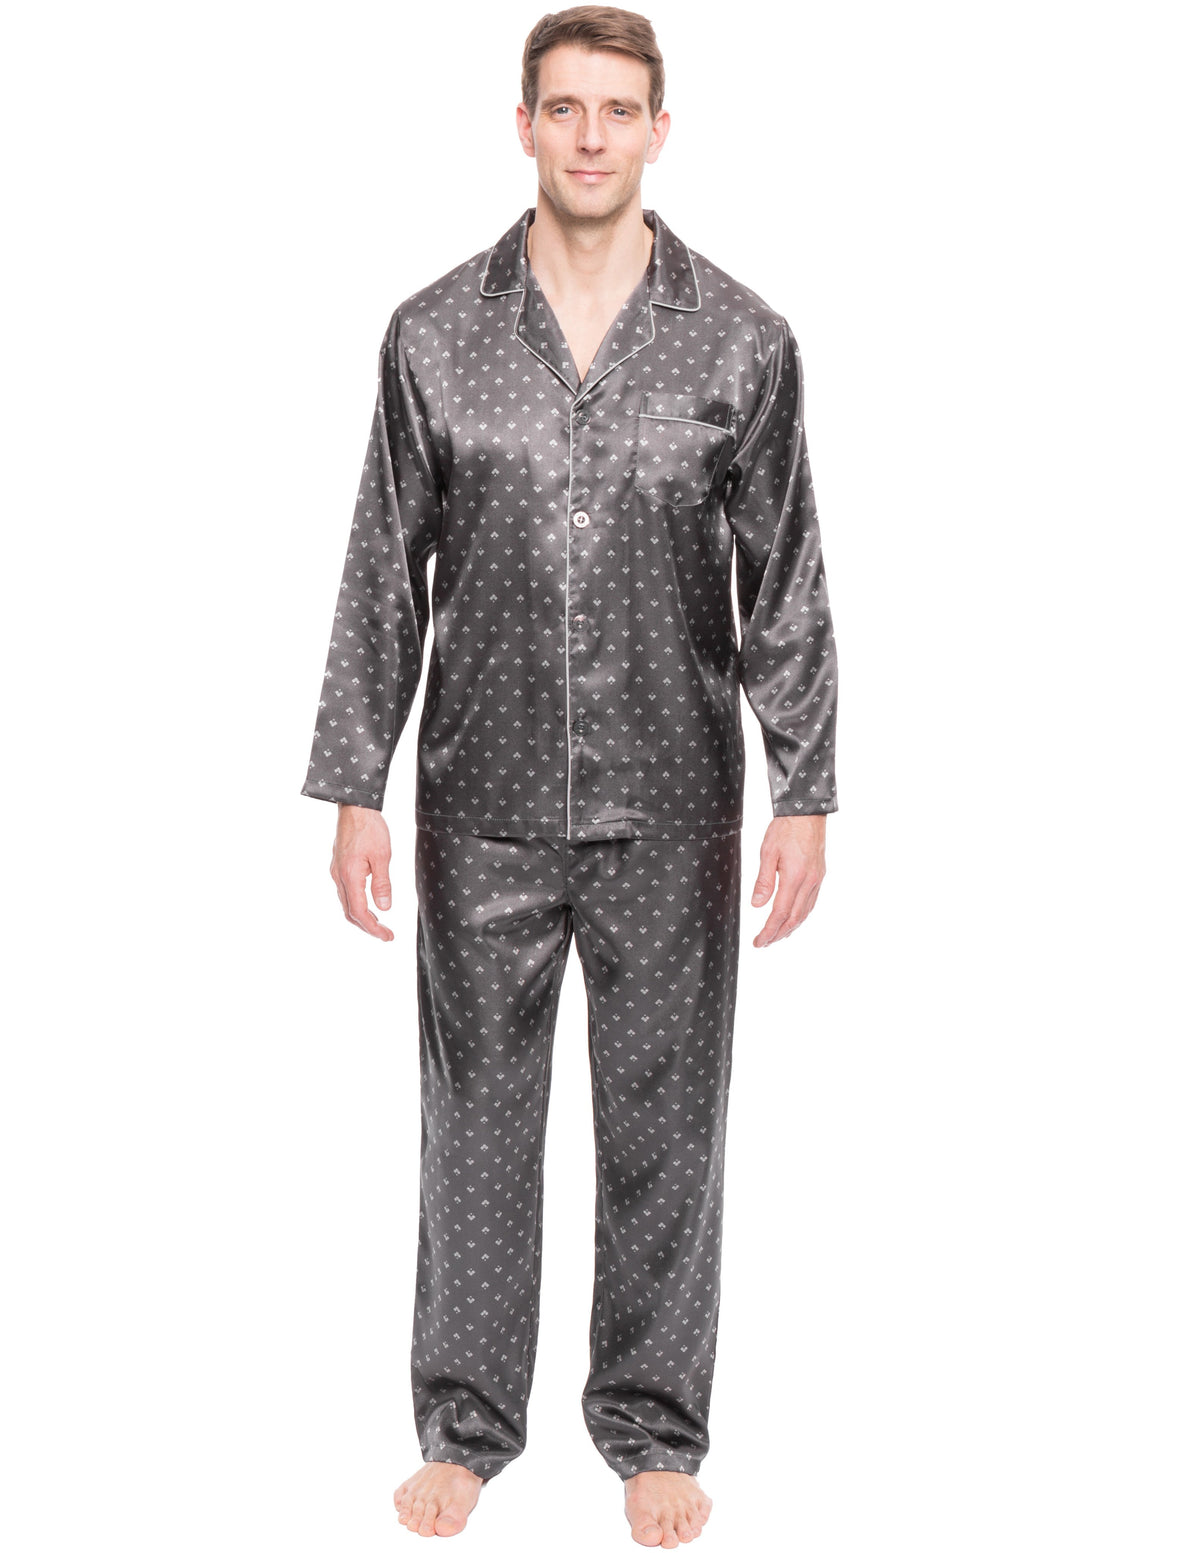 Mens Satin Sleepwear/Pajama Set - Diamond Squares Dark Grey